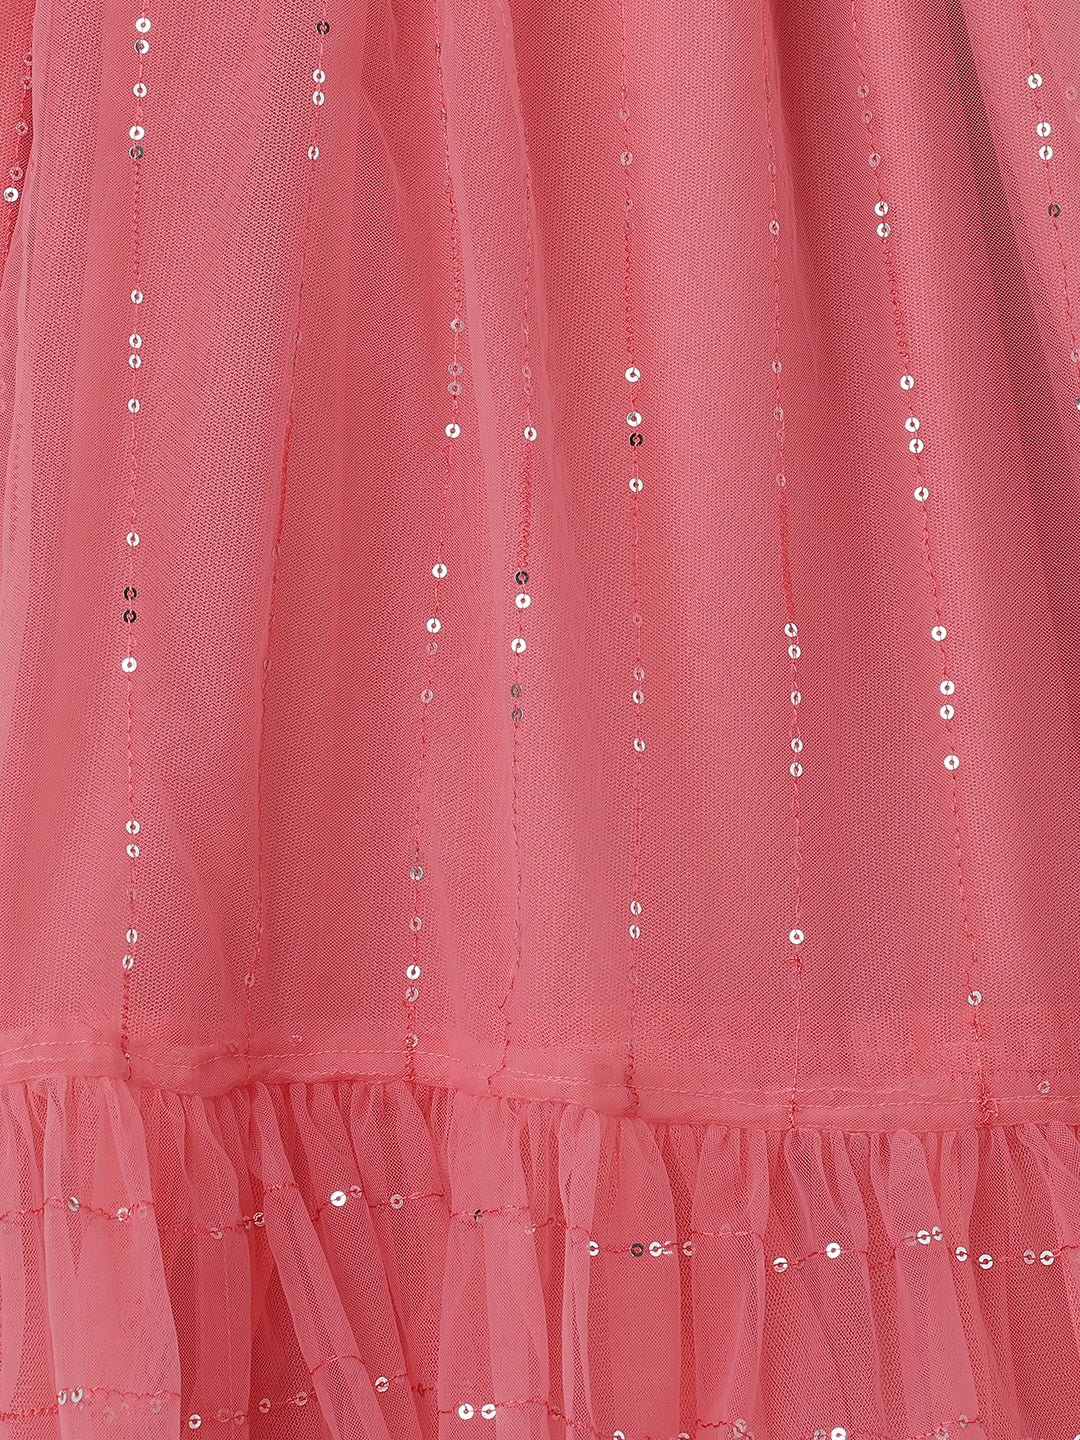 Girls Coral Pink Sequin Embellished Mesh Dress